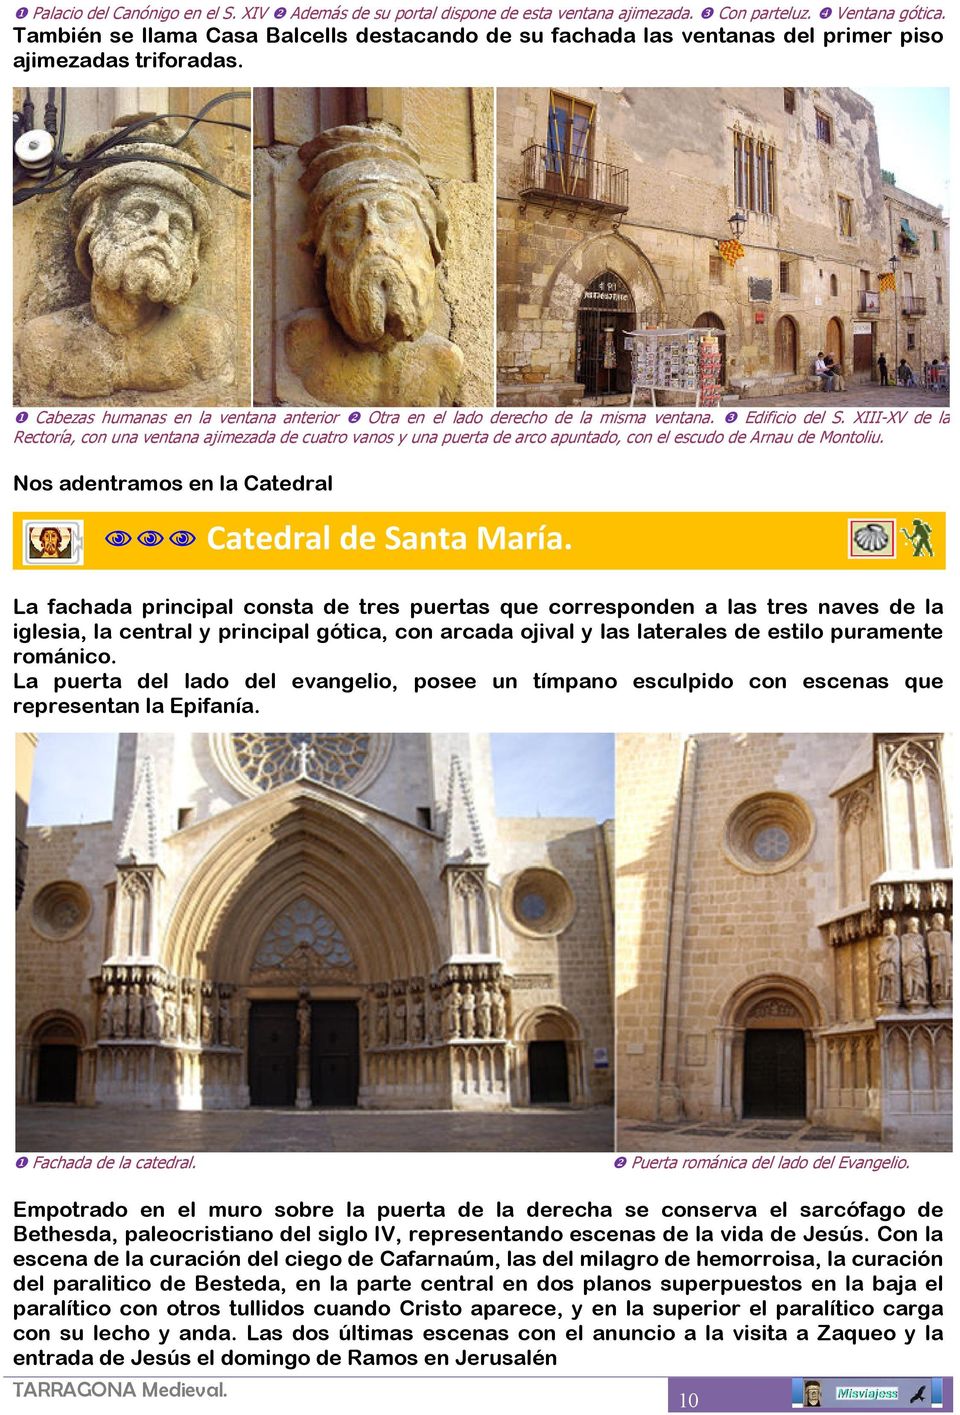 ❸ Edificio del S. XIII-XV de la Rectoría, con una ventana ajimezada de cuatro vanos y una puerta de arco apuntado, con el escudo de Arnau de Montoliu.